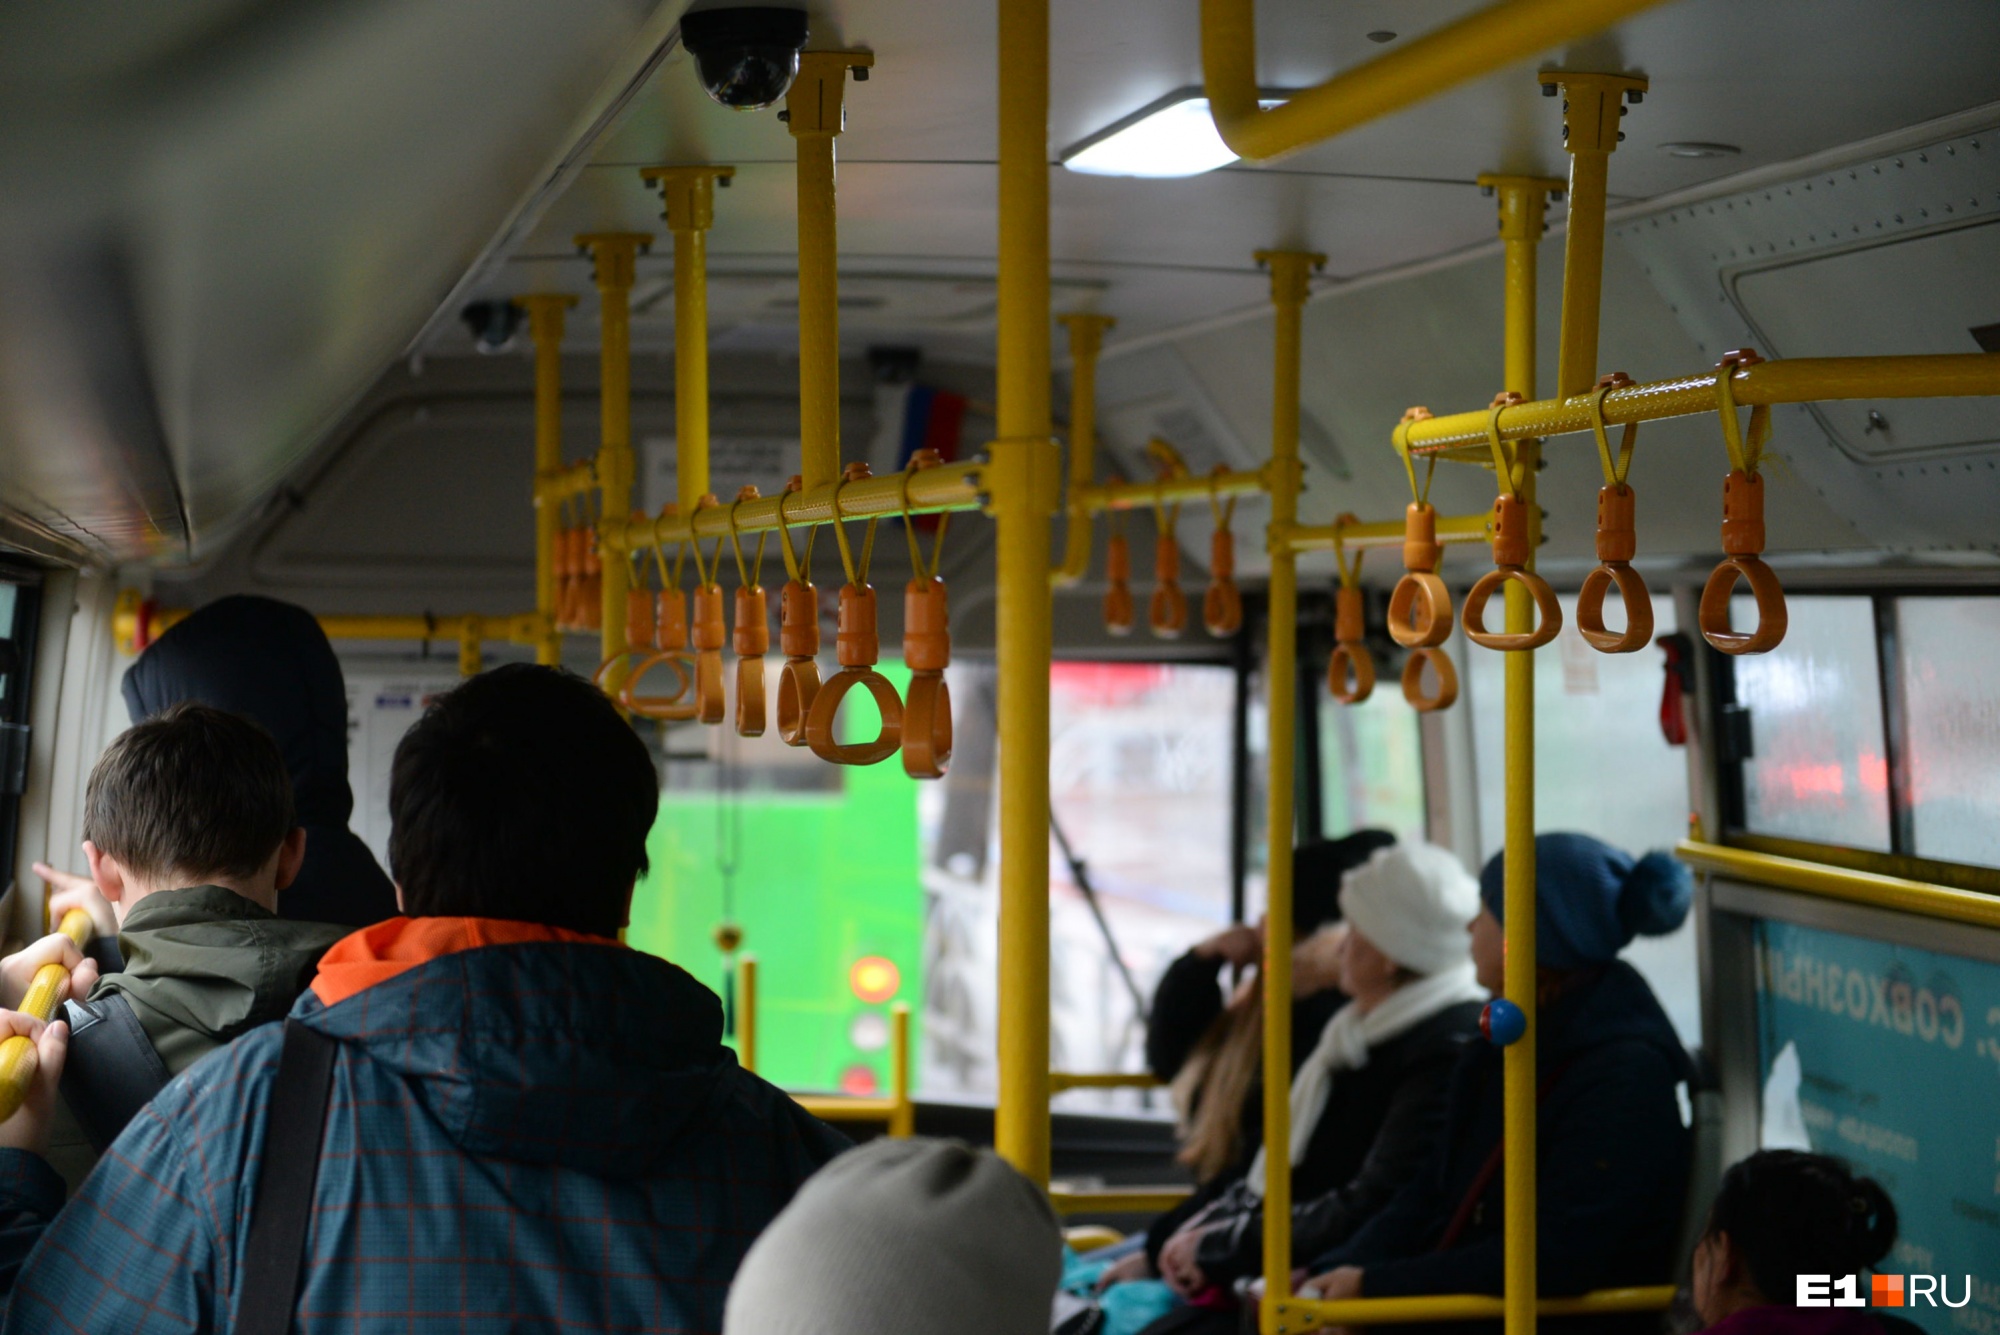 В Екатеринбурге устроят облаву на водителей автобусов. Будут искать мигрантов-нелегалов